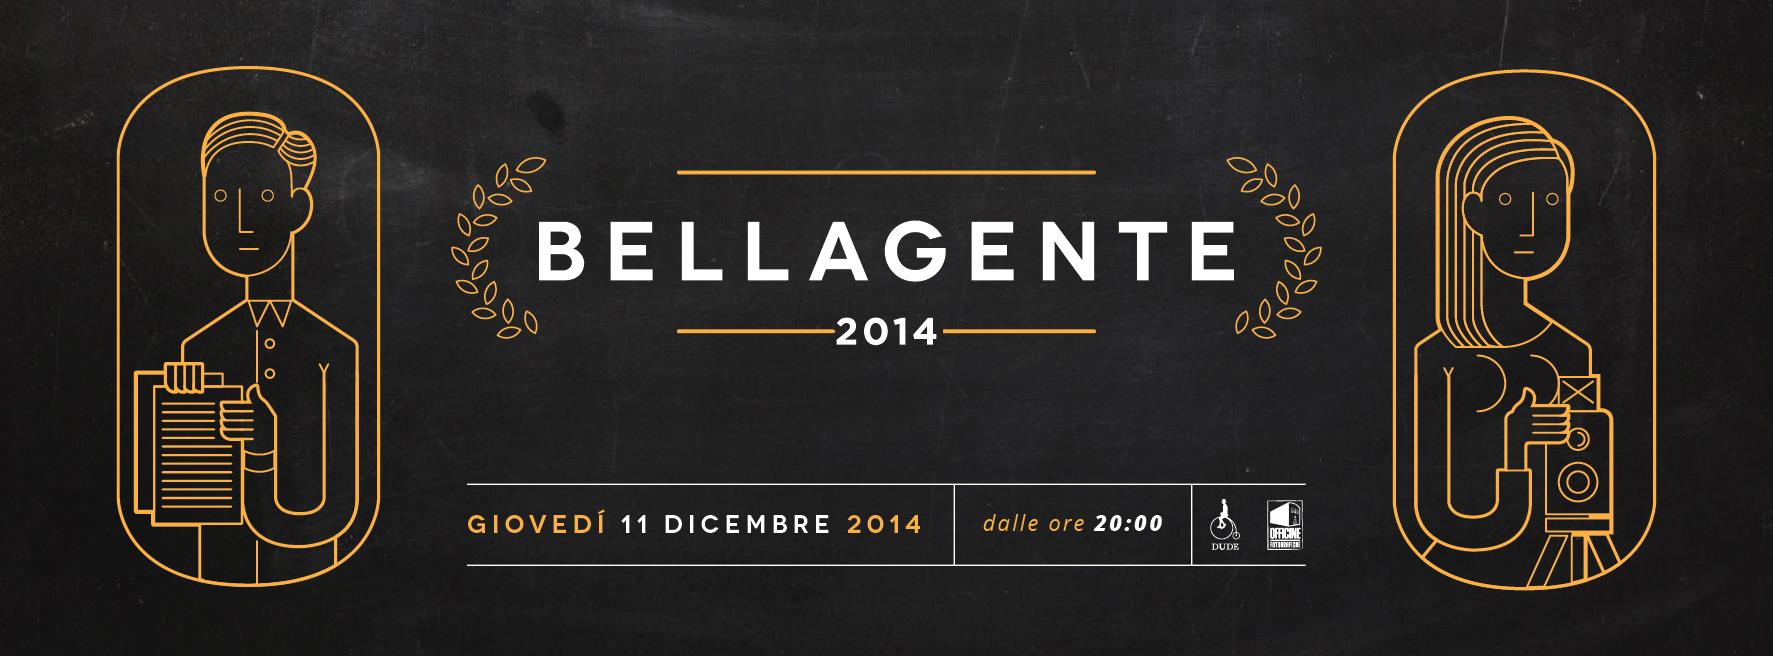 Bellagente 2014